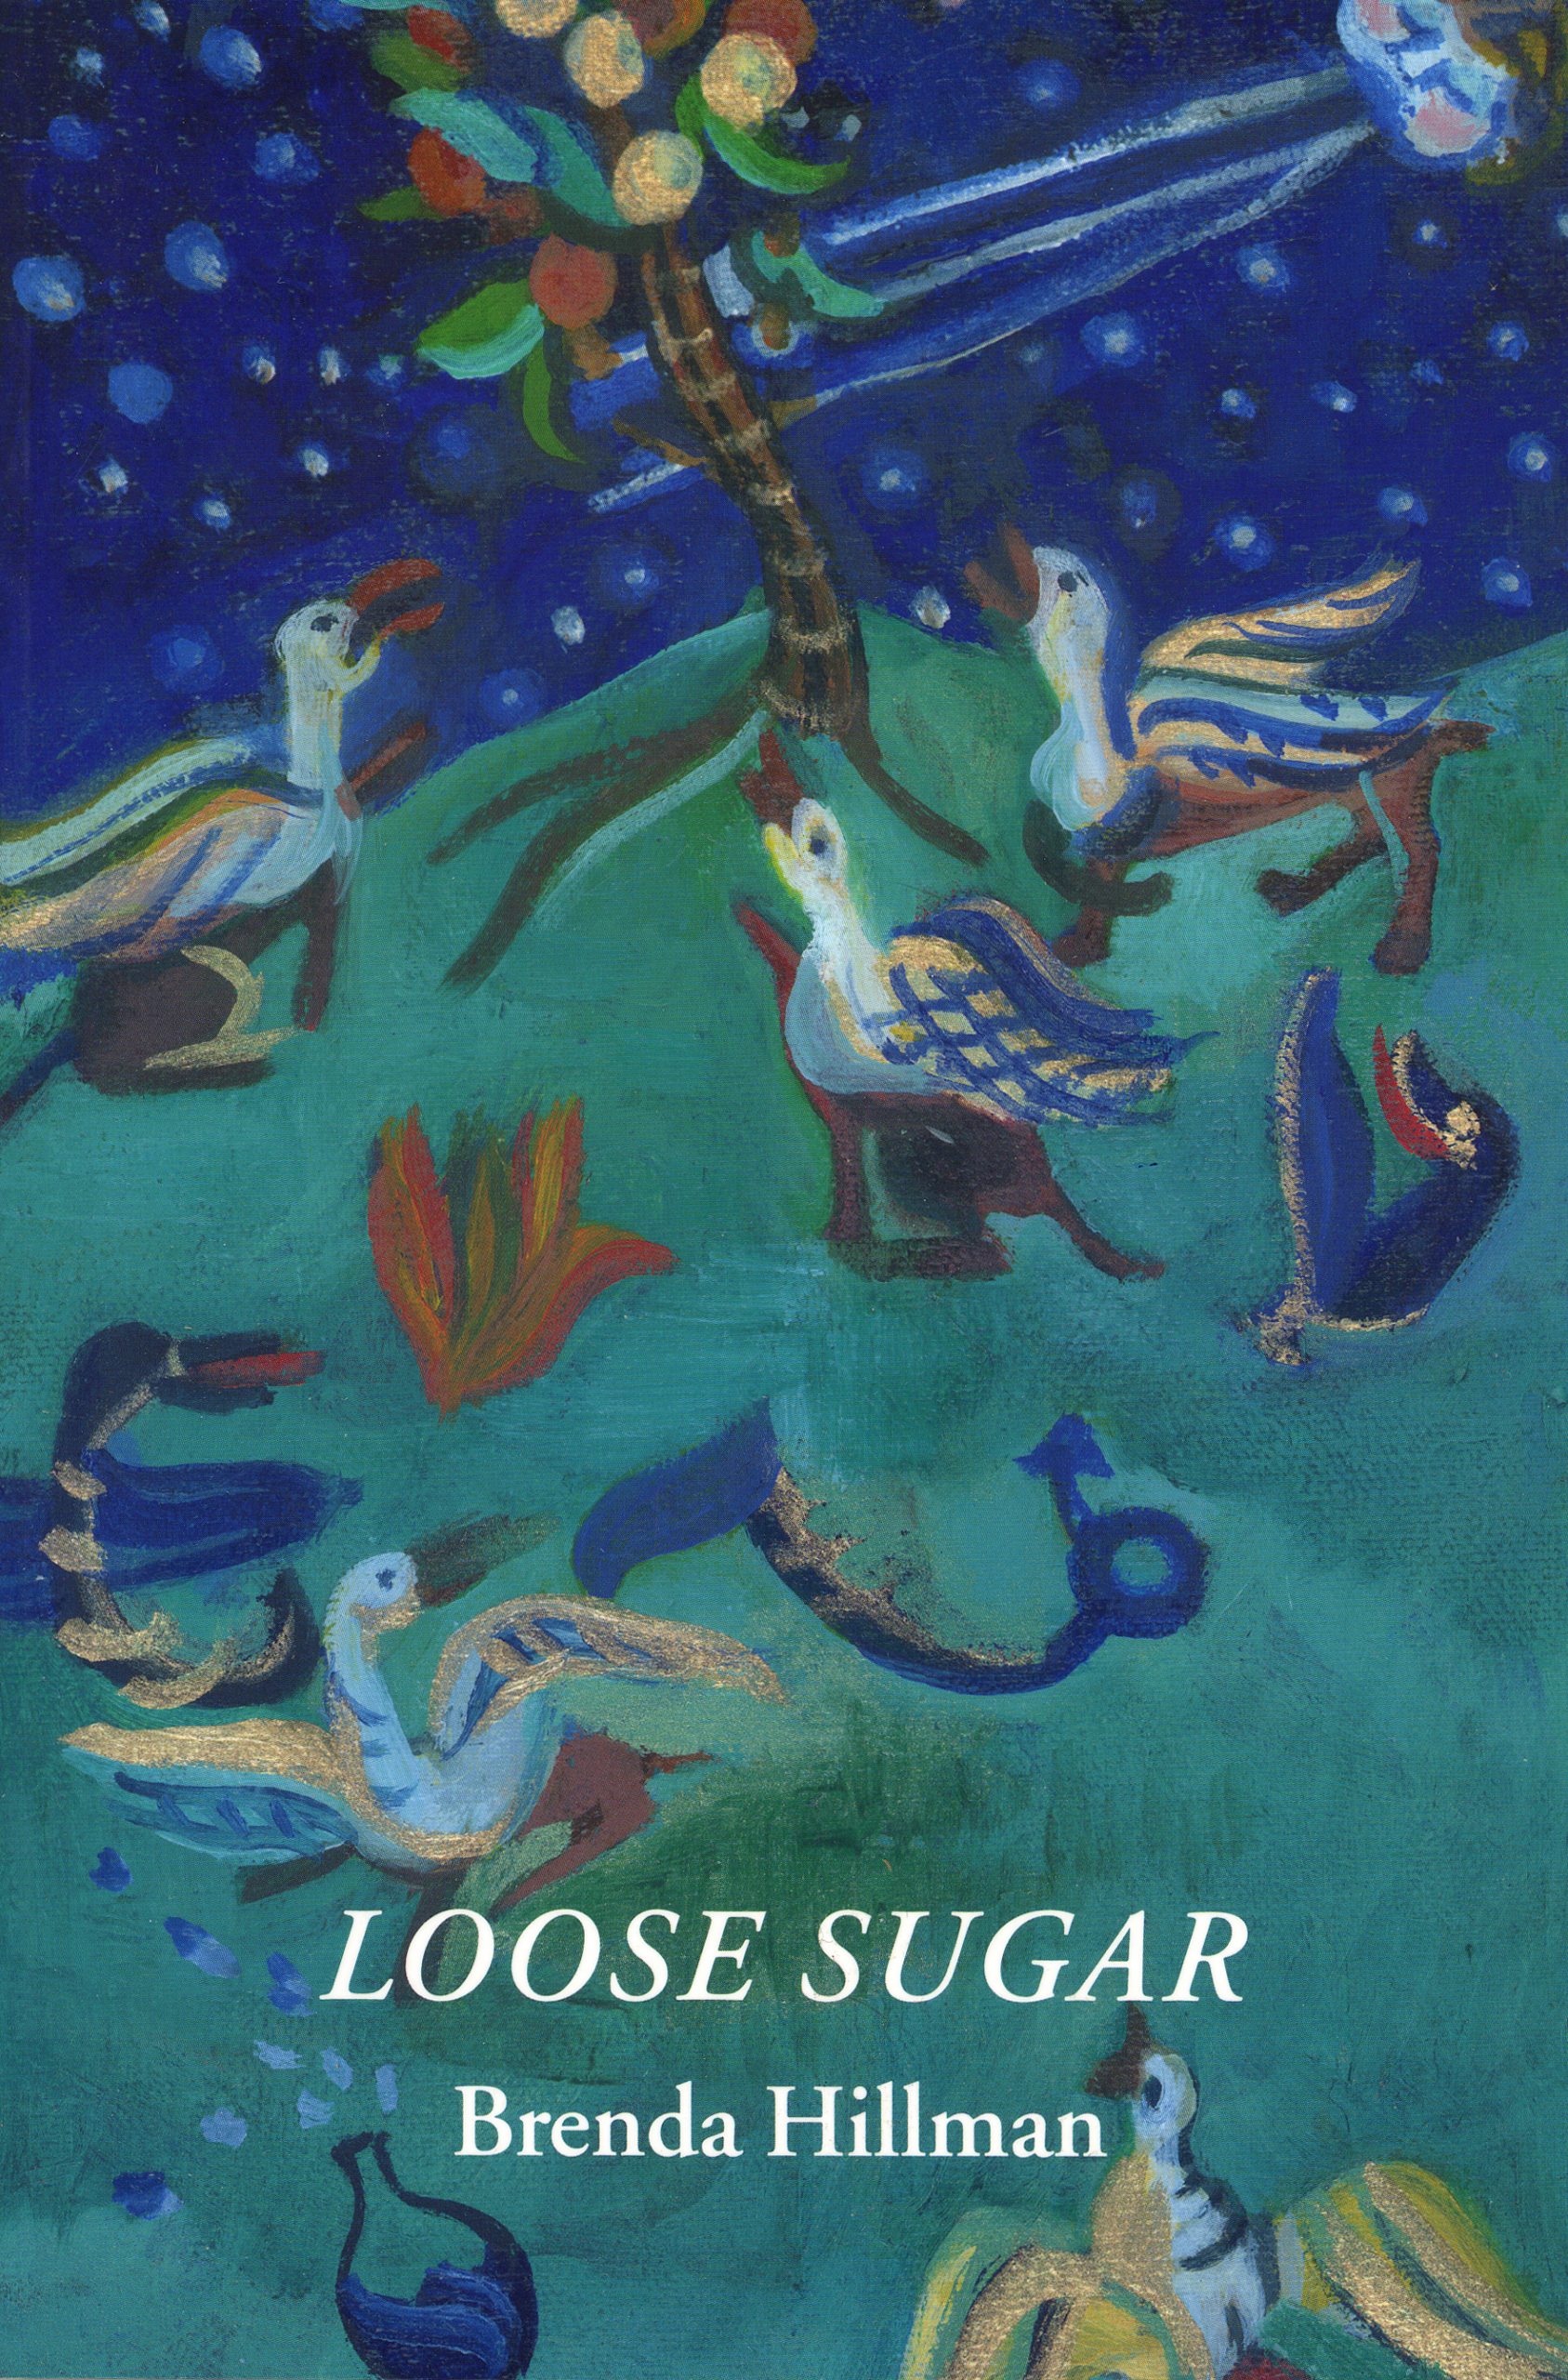 Loose Sugar by Brenda Hillman